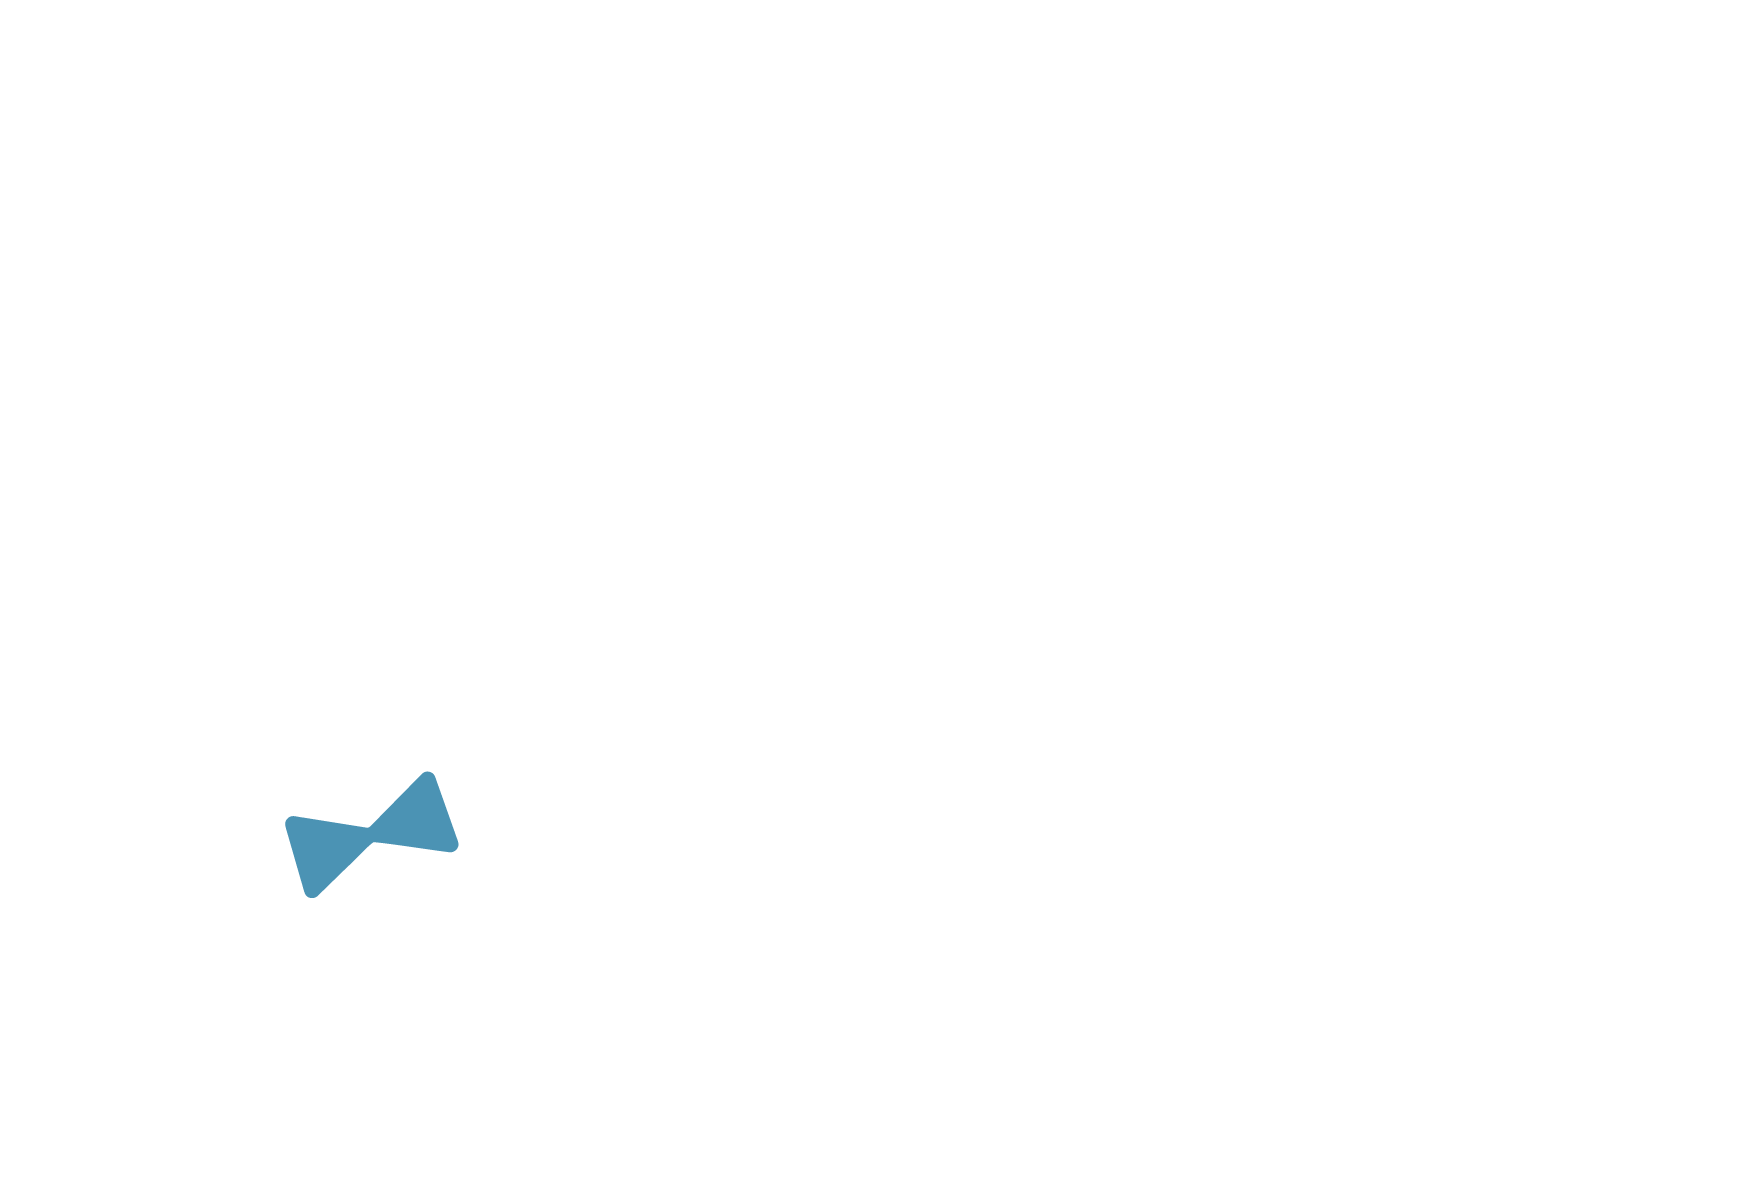 全てのわんちゃんに健康と安心を trimmingcar pono